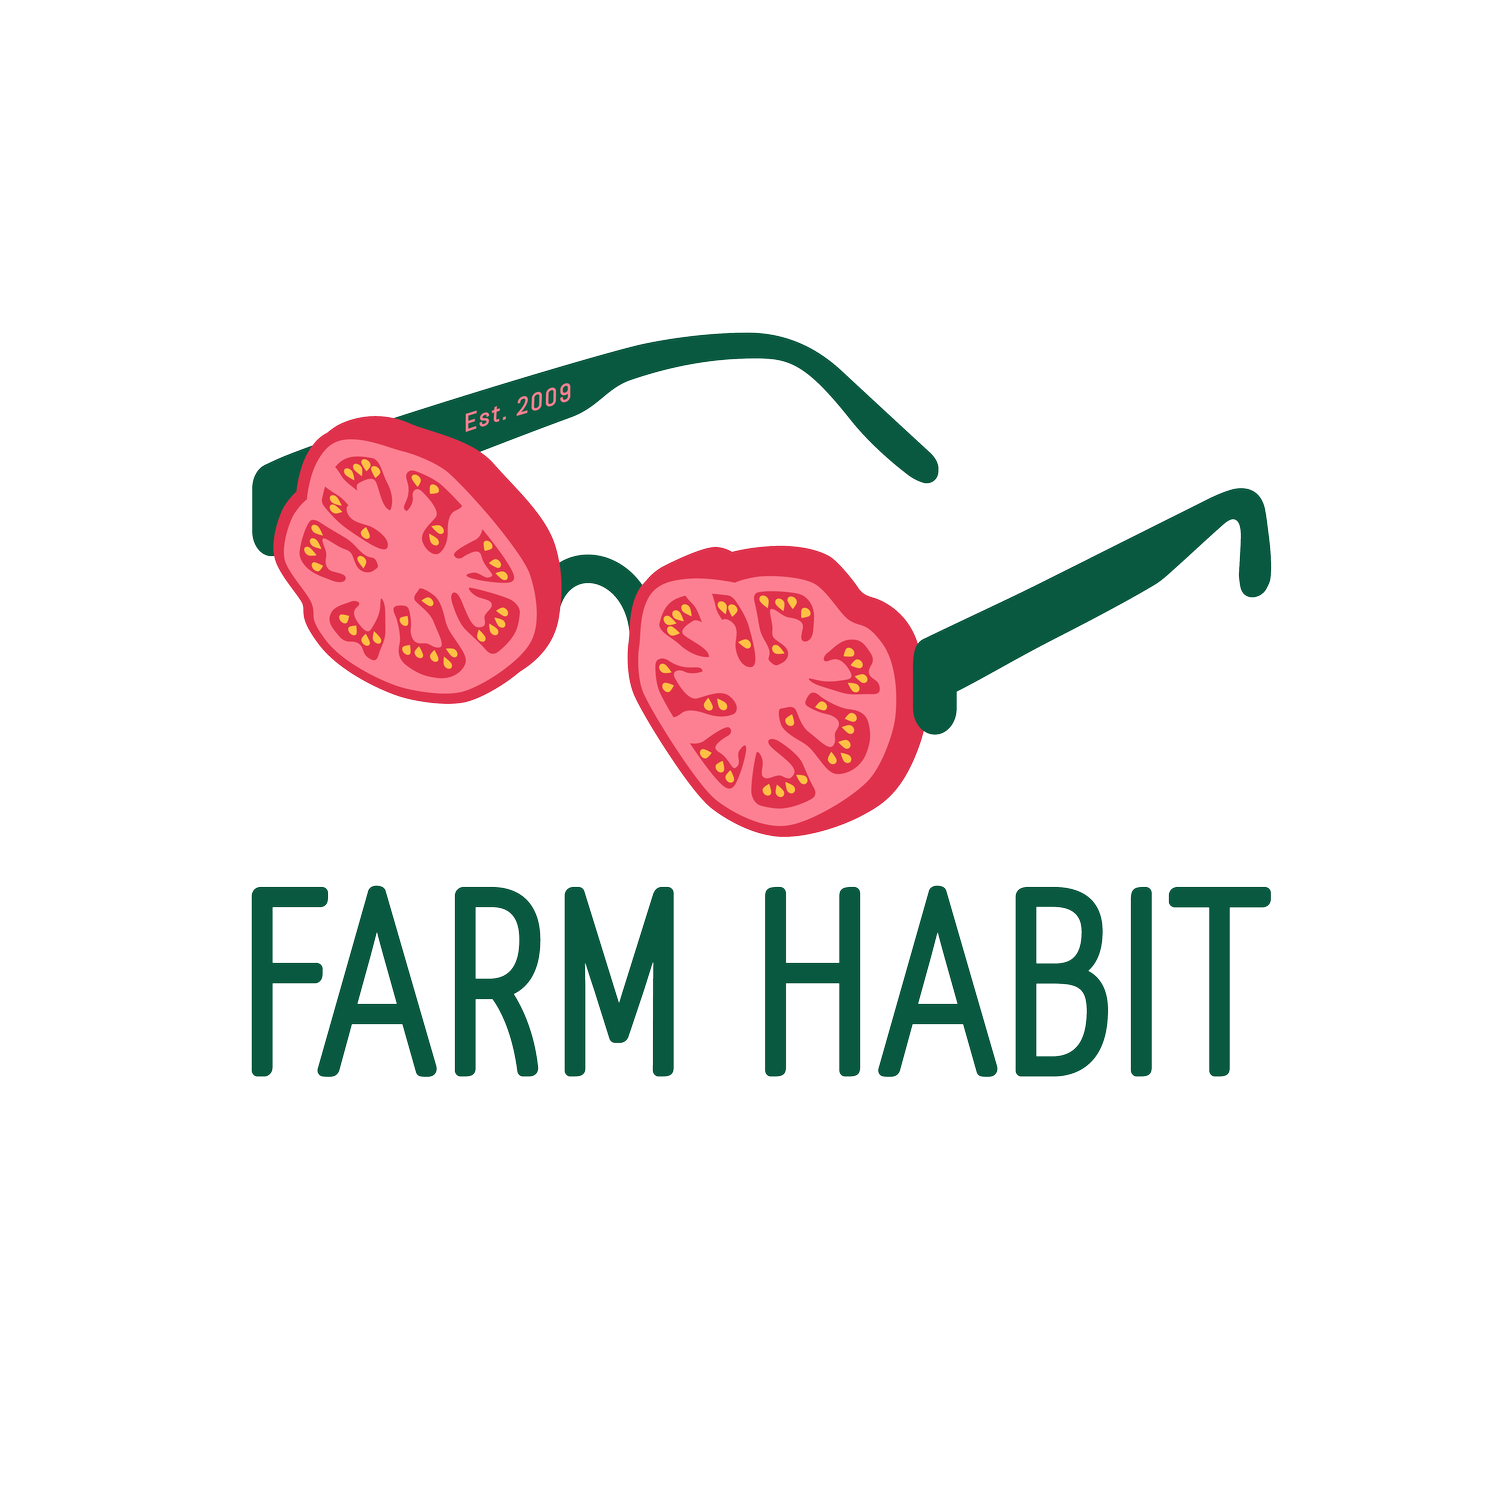 Farm Habit